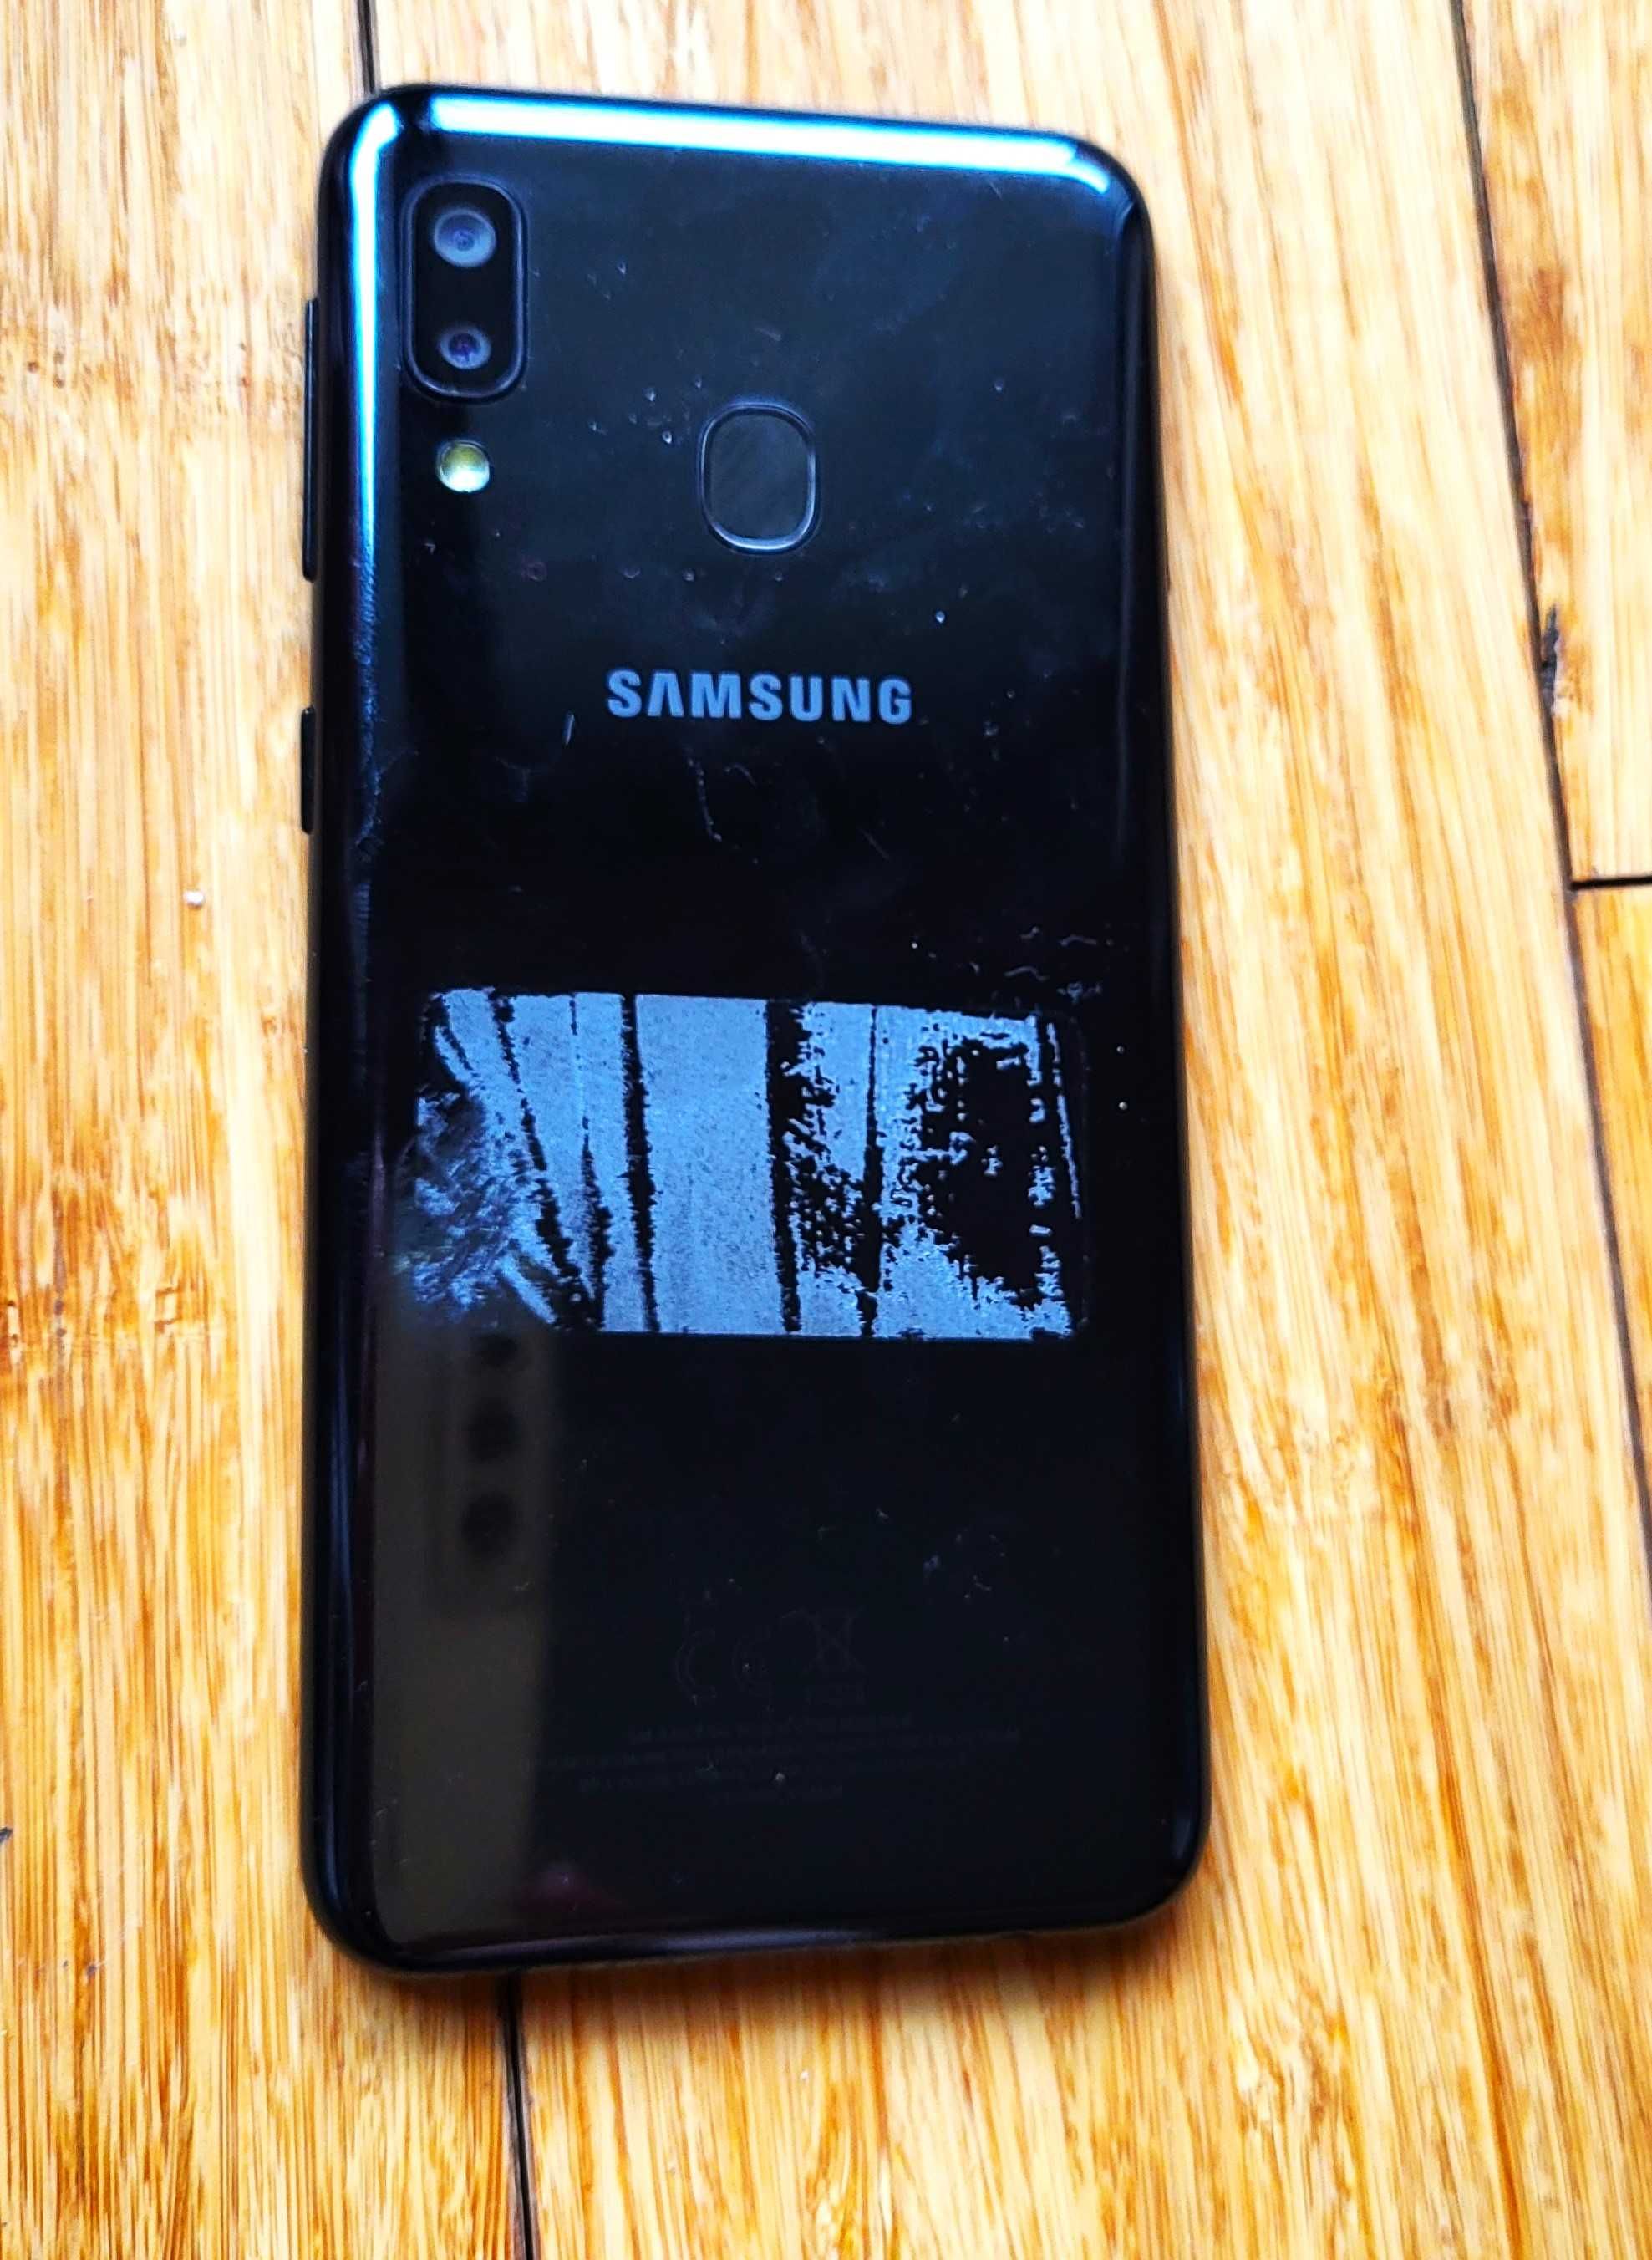 Samsung Galaxy A20e telefon używany jak nowy sprawny